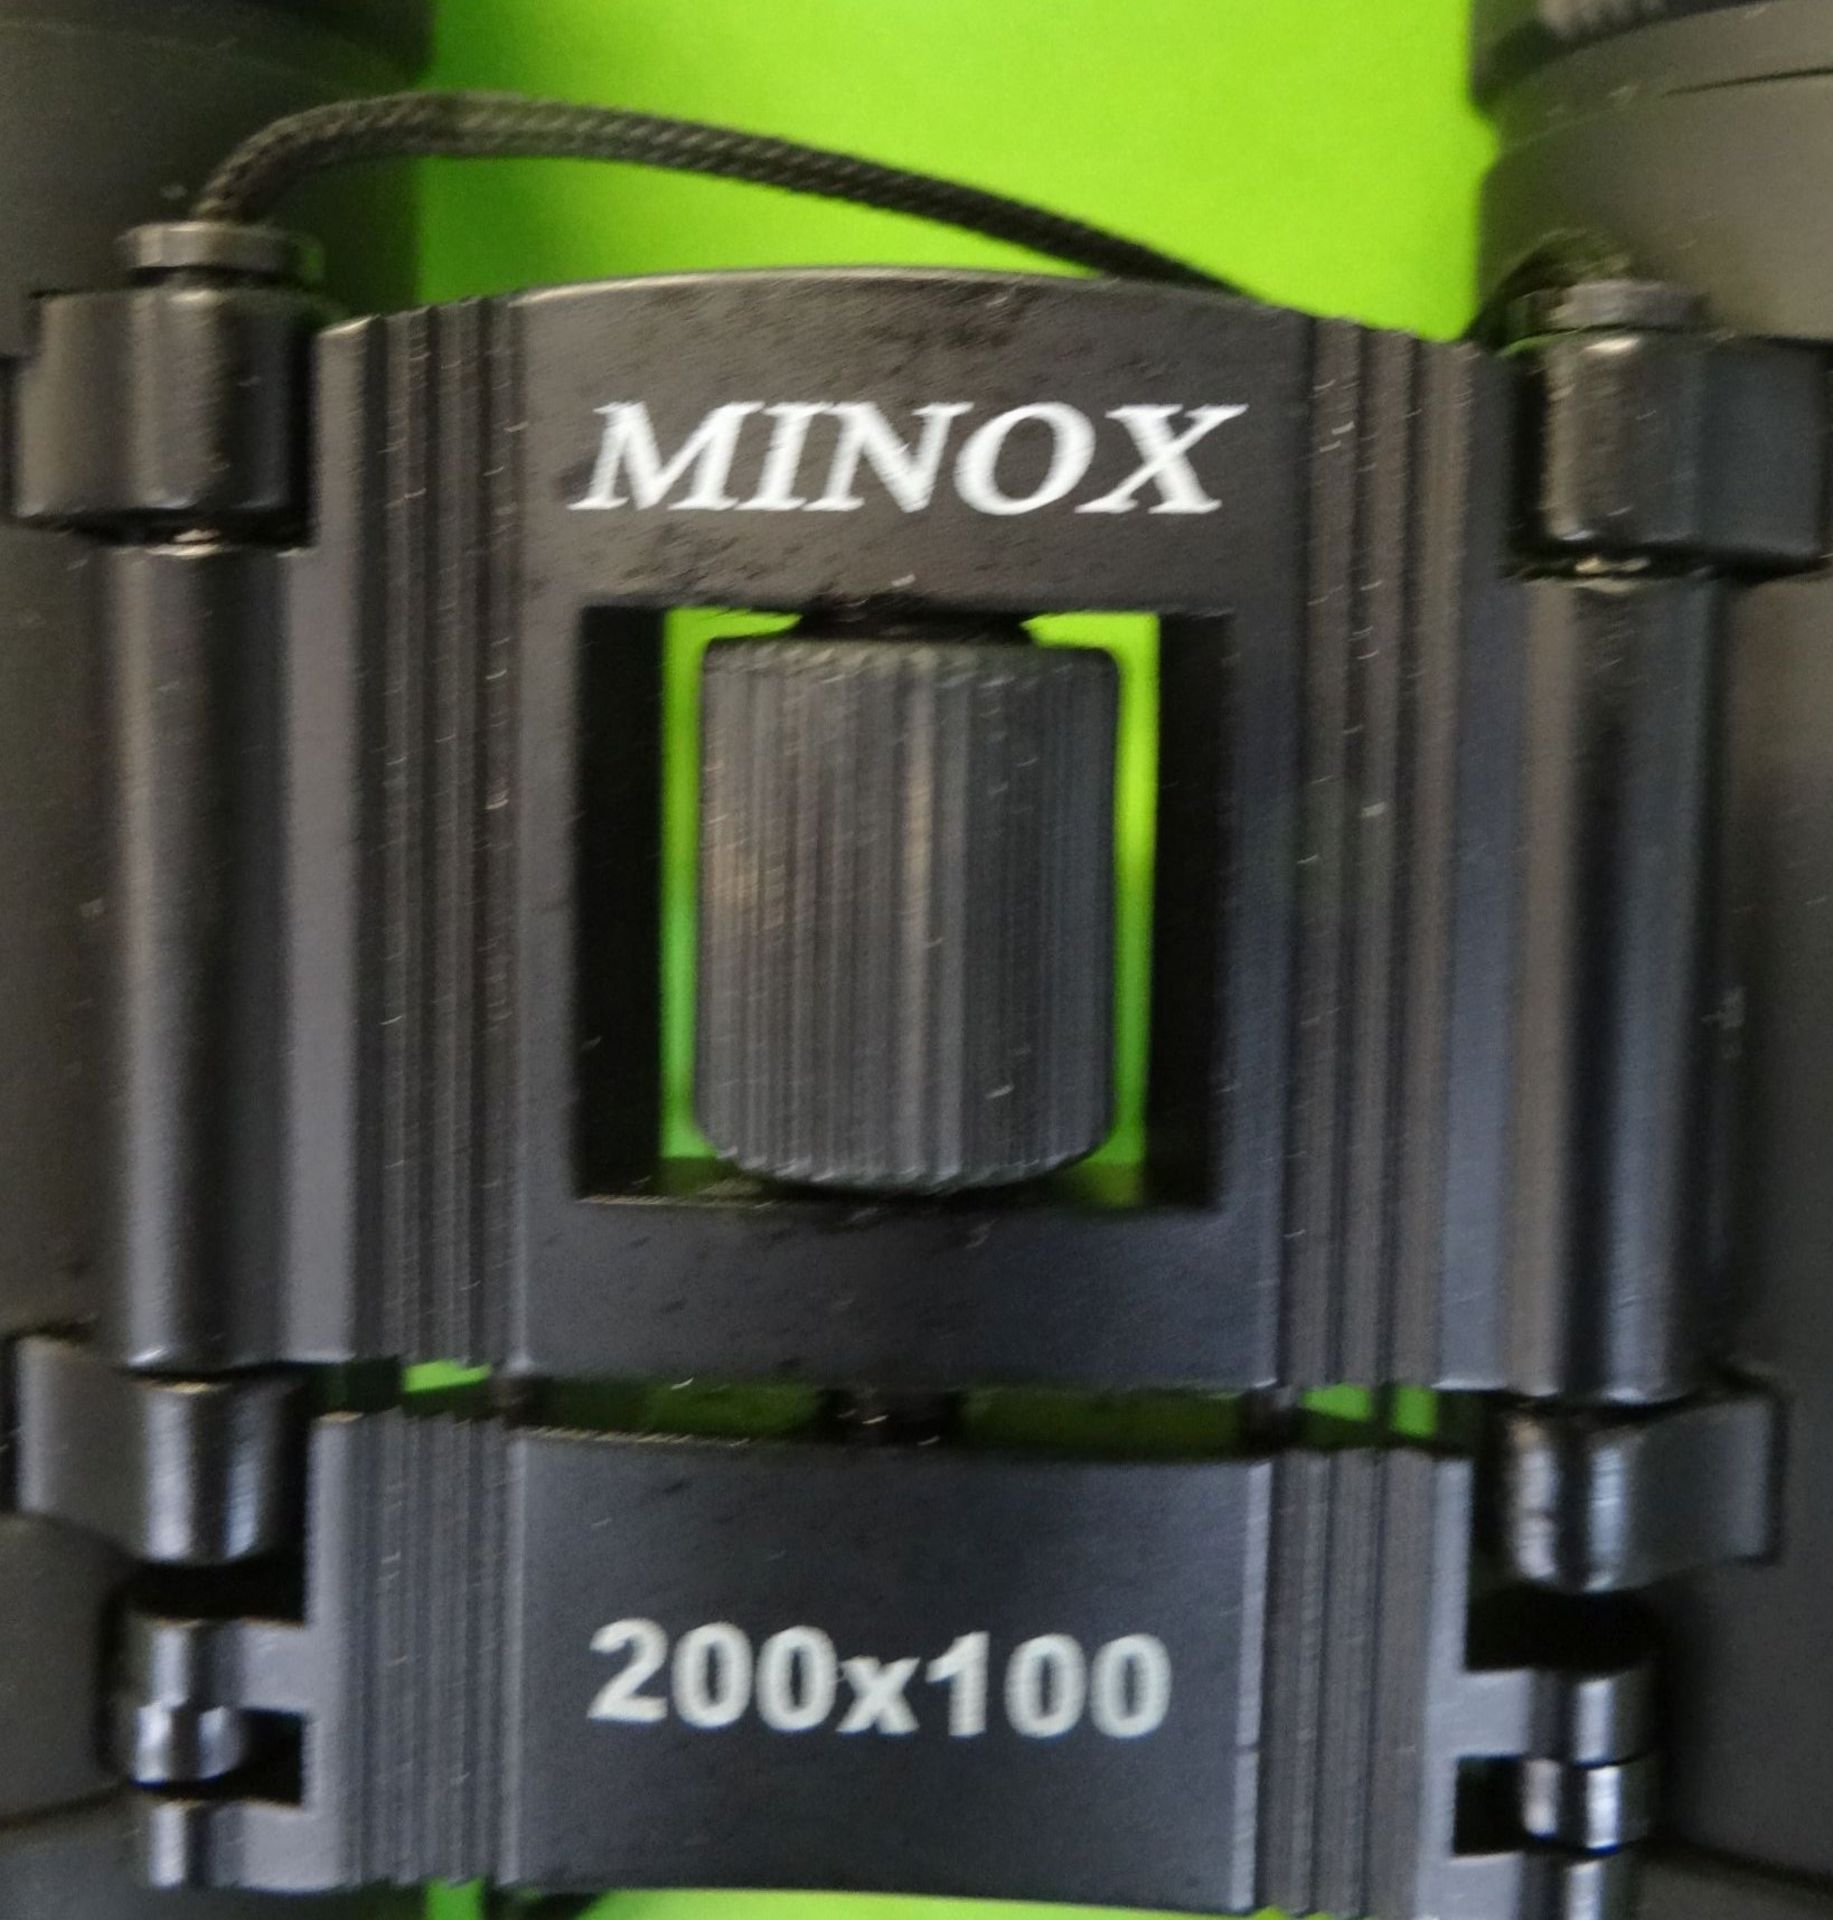 kl. Fernglas "Minox" 200x100, guter Zustand - Bild 3 aus 3